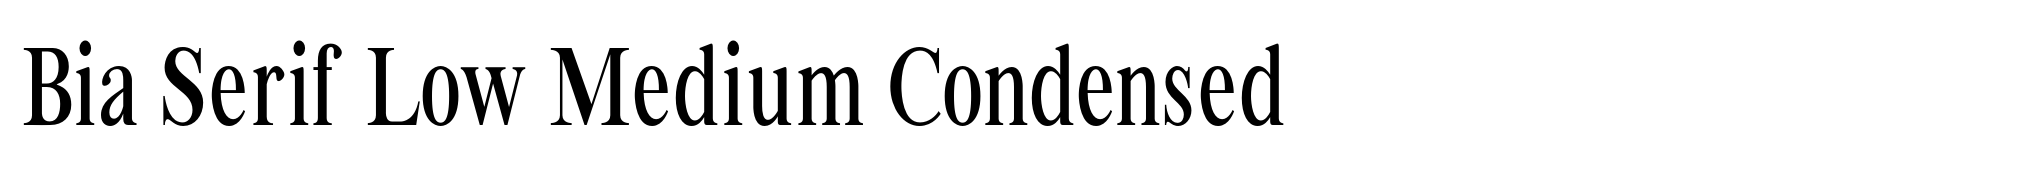 Bia Serif Low Medium Condensed image